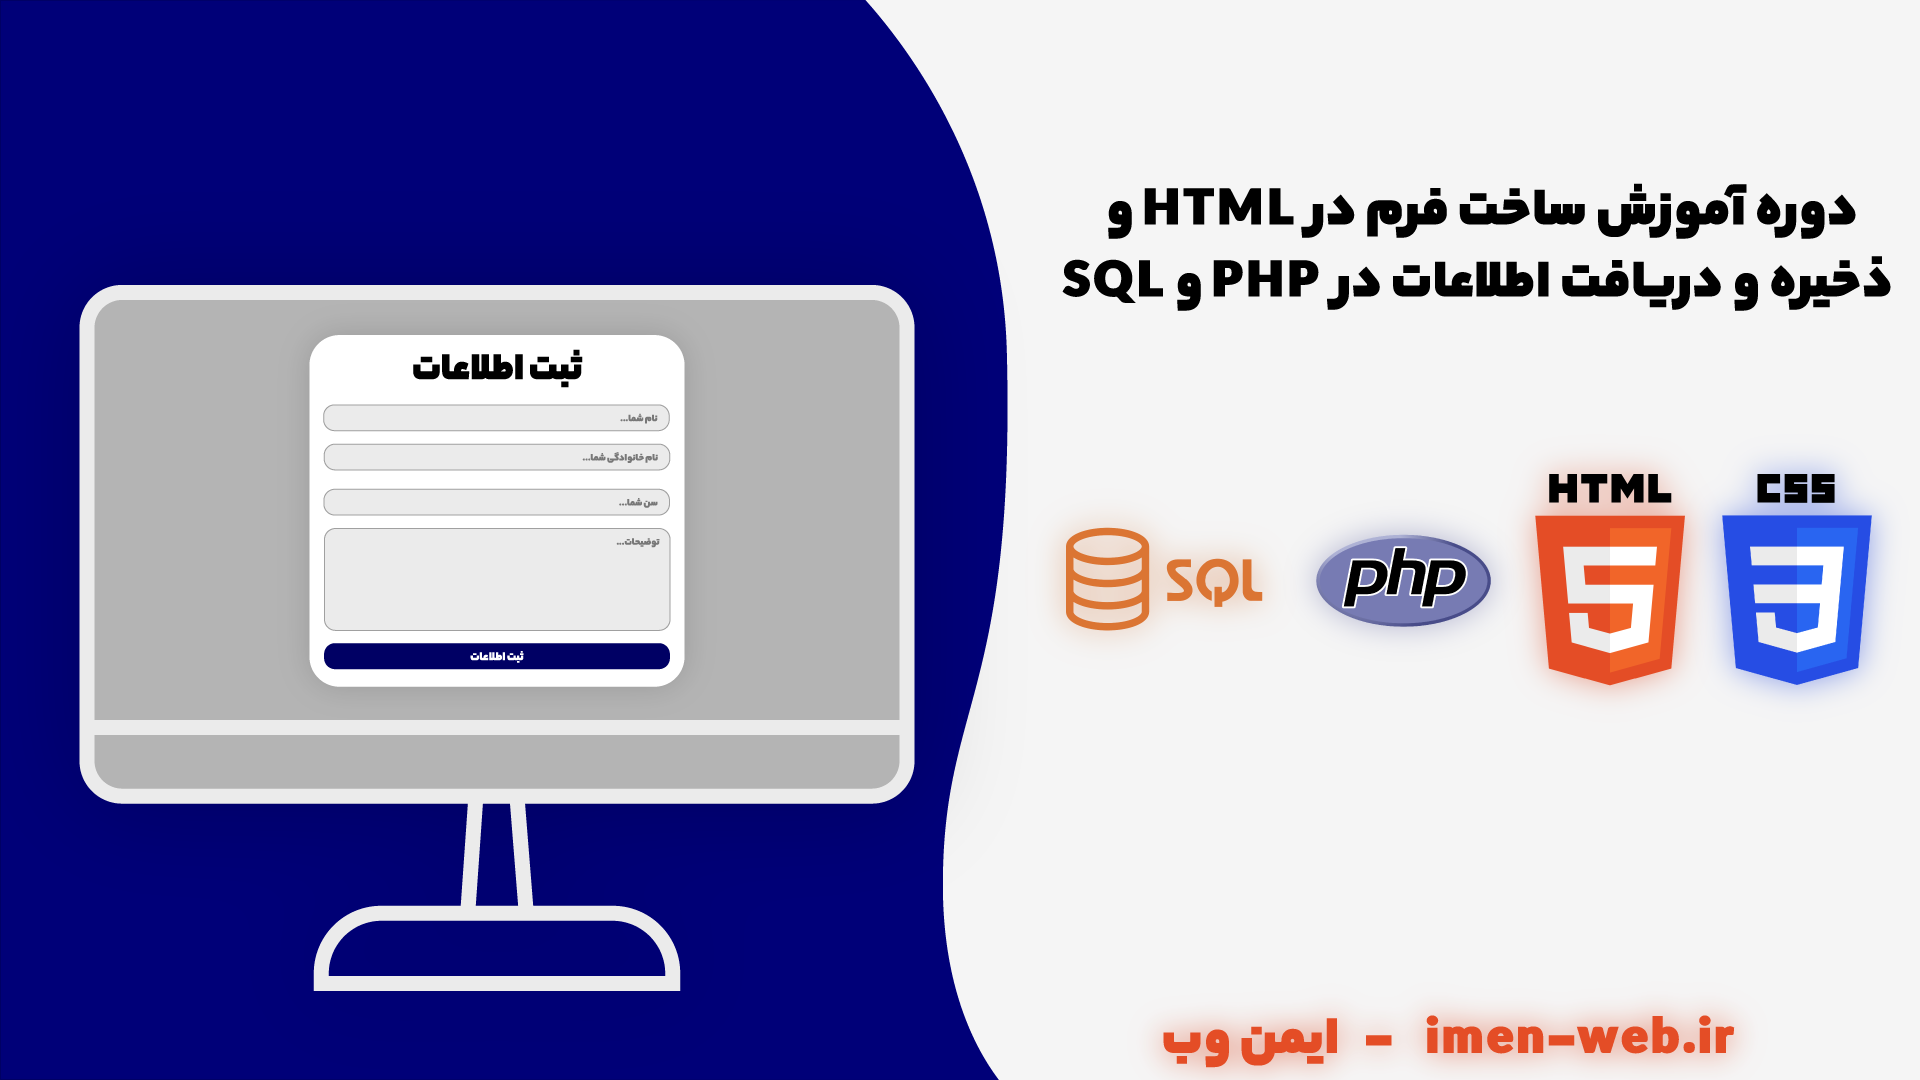 آموزش ساخت فرم در HTML و دریافت و ذخیره اطلاعات در PHP و SQL